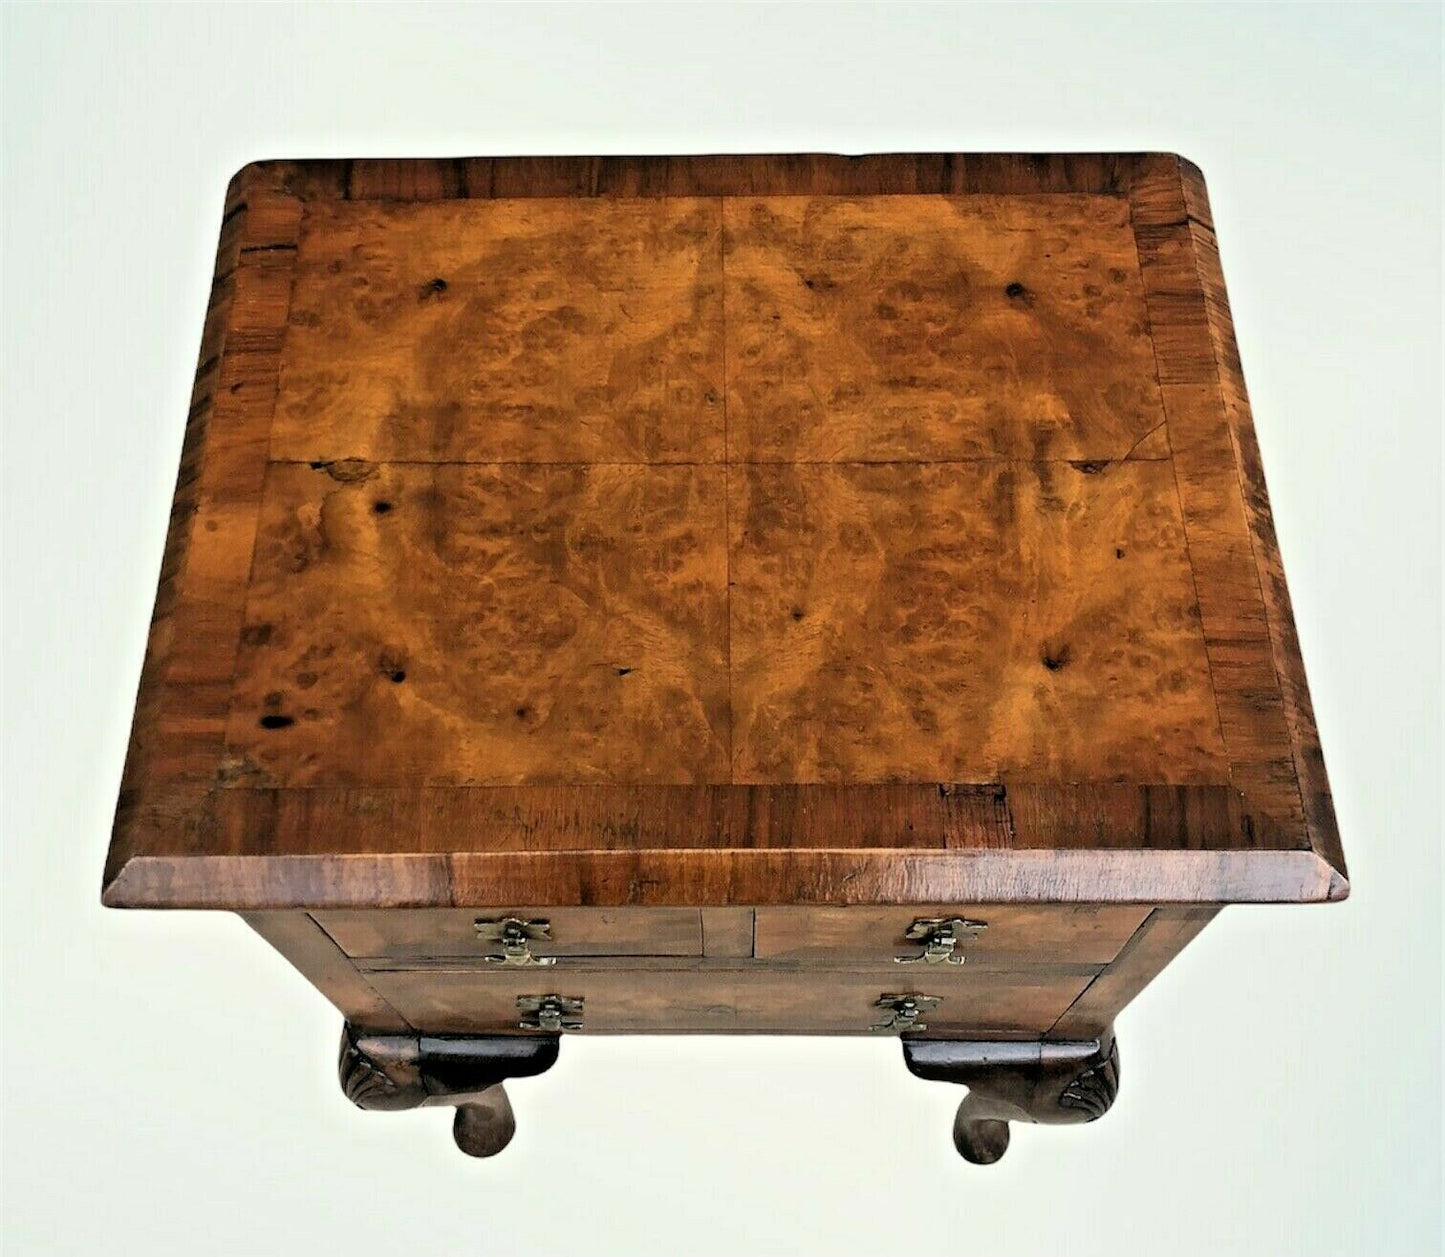 Vintage Figured Walnut Bedside Lamp Table ( SOLD )